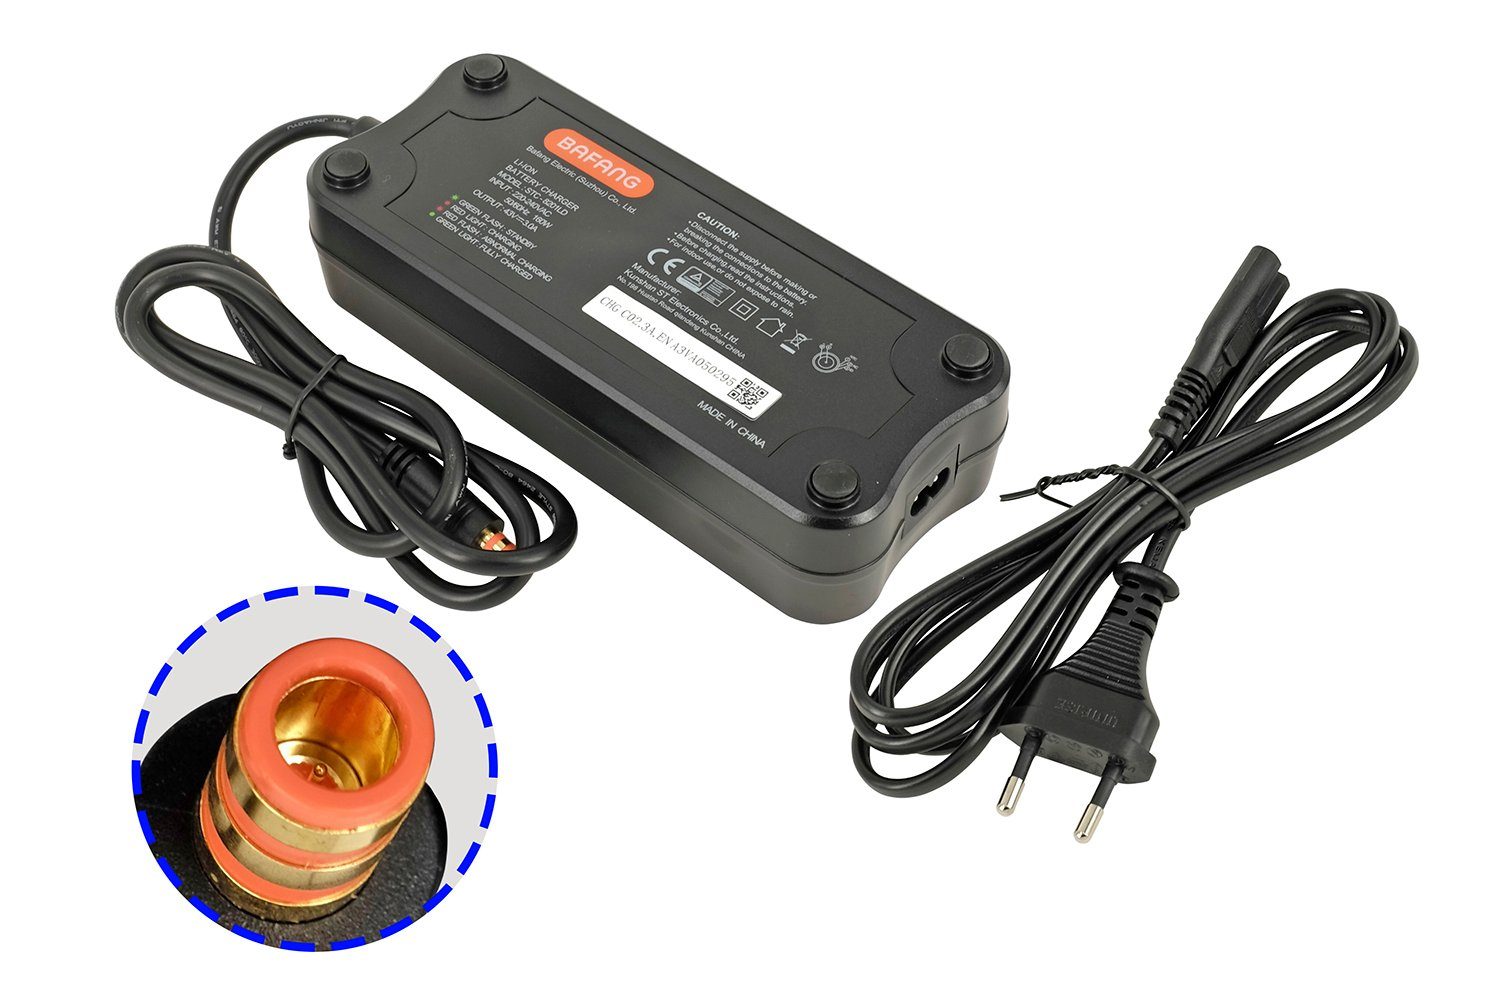 PowerSmart CBB151230.D21C5 Batterie-Ladegerät (42V 3A AC Adapter für elektrische Fahrradbatterien CBFACCU750CB CBFACCU750 CBFACCU450CB, Bafang Ladegerät)